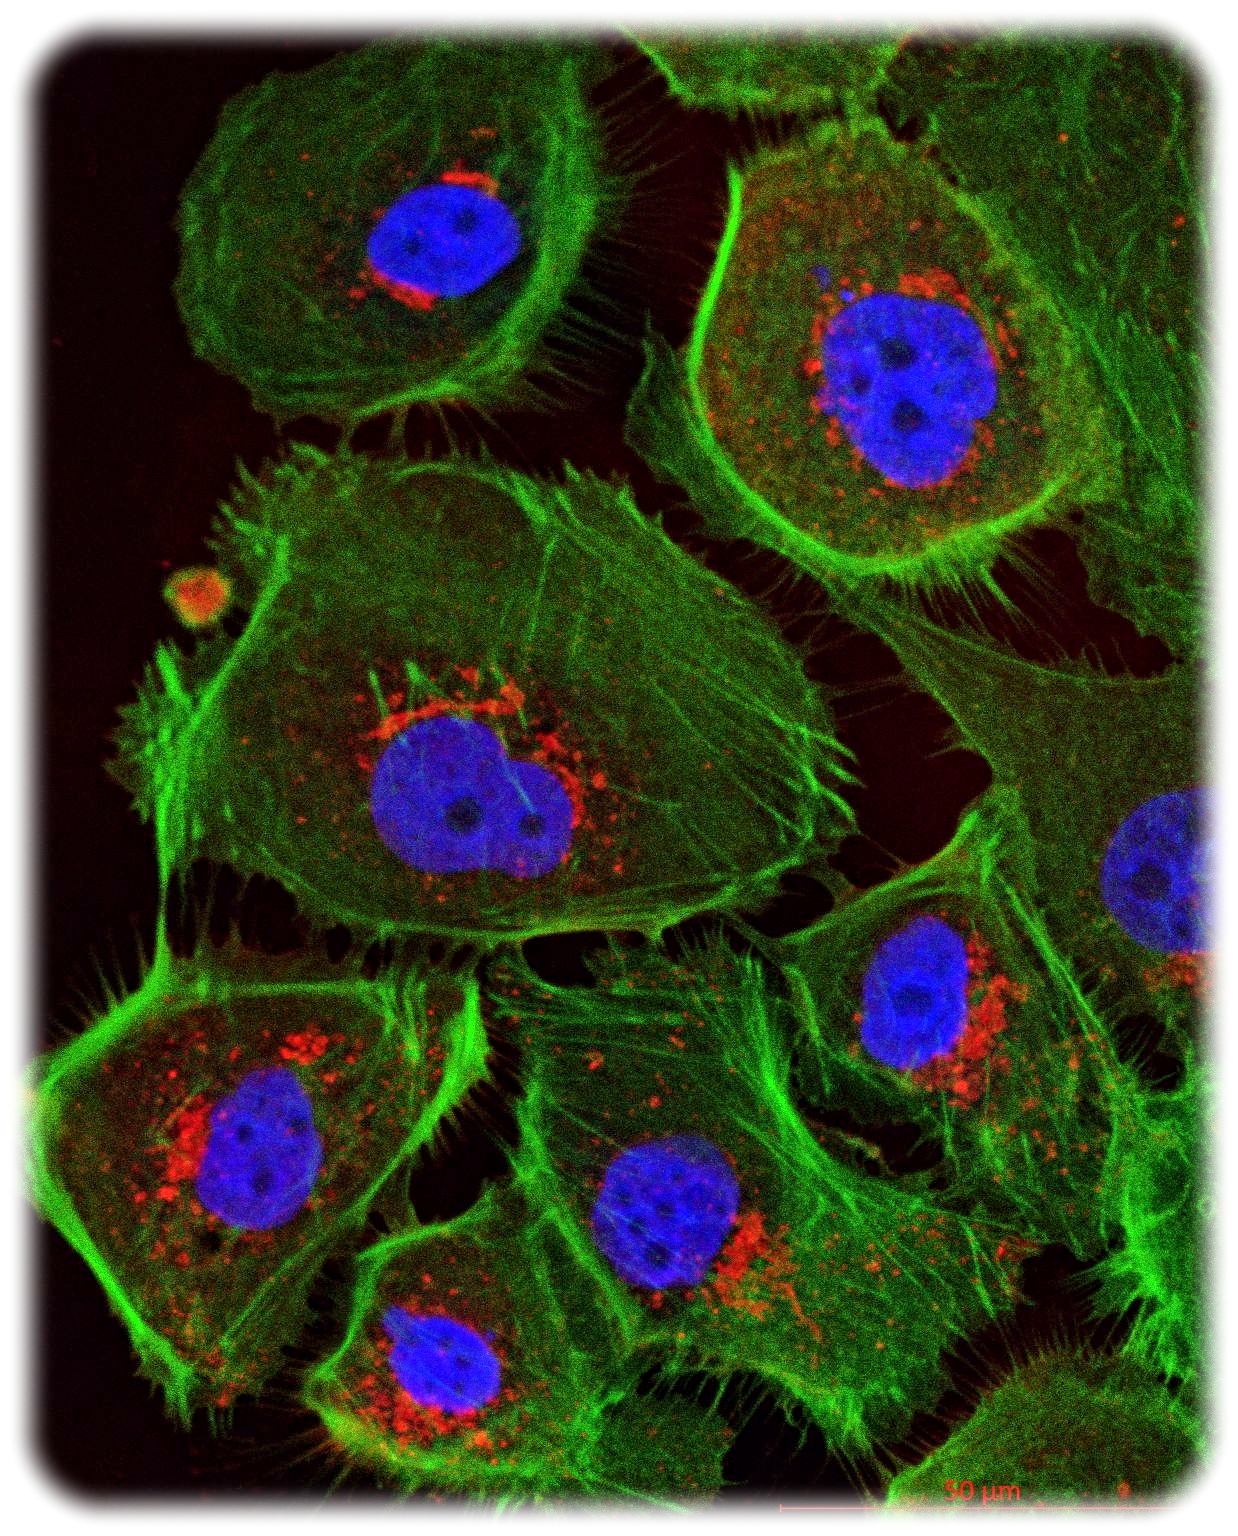 Mikroskopische Ansicht menschlicher Eierstockkrebszellen. Durch Fluoreszenzfarben erscheinen Zellkerne blau und das Zellskelett grün. Aufnahme: Uniklinikum Dresden, Klinik für Frauenheilkunde